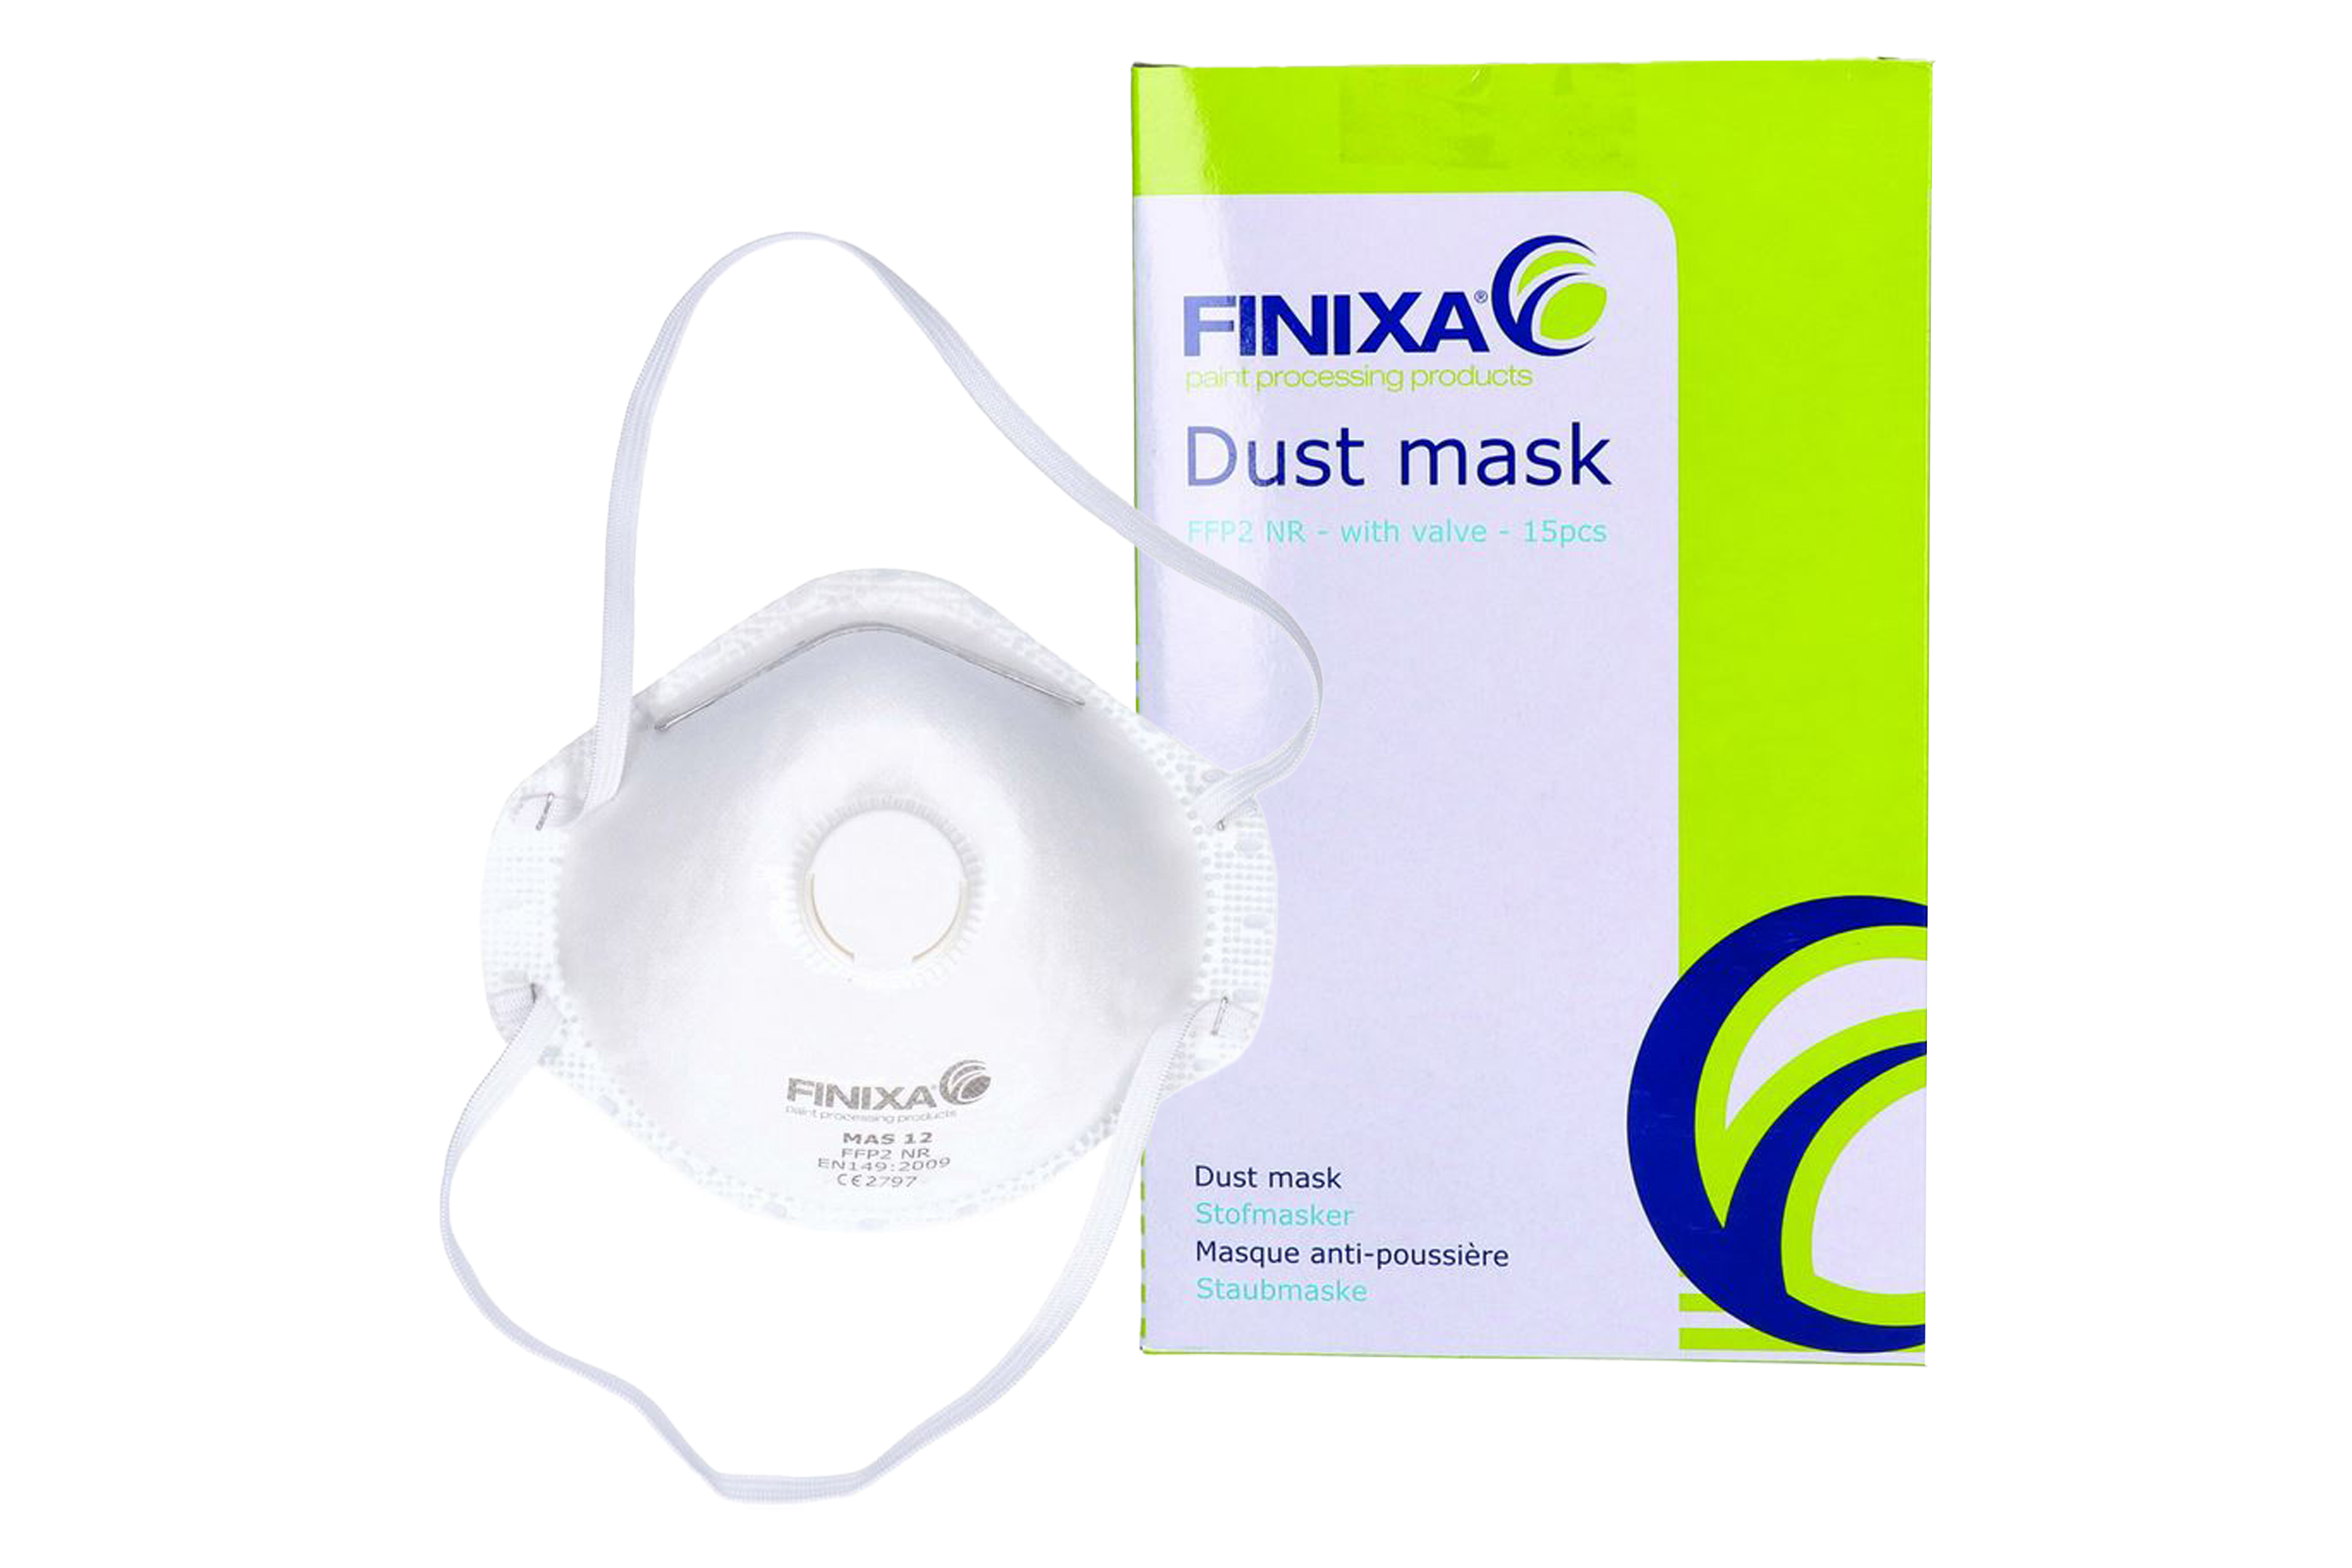 Abbildung Finixa FFP2 Feinstaubmaske und Verpackung.